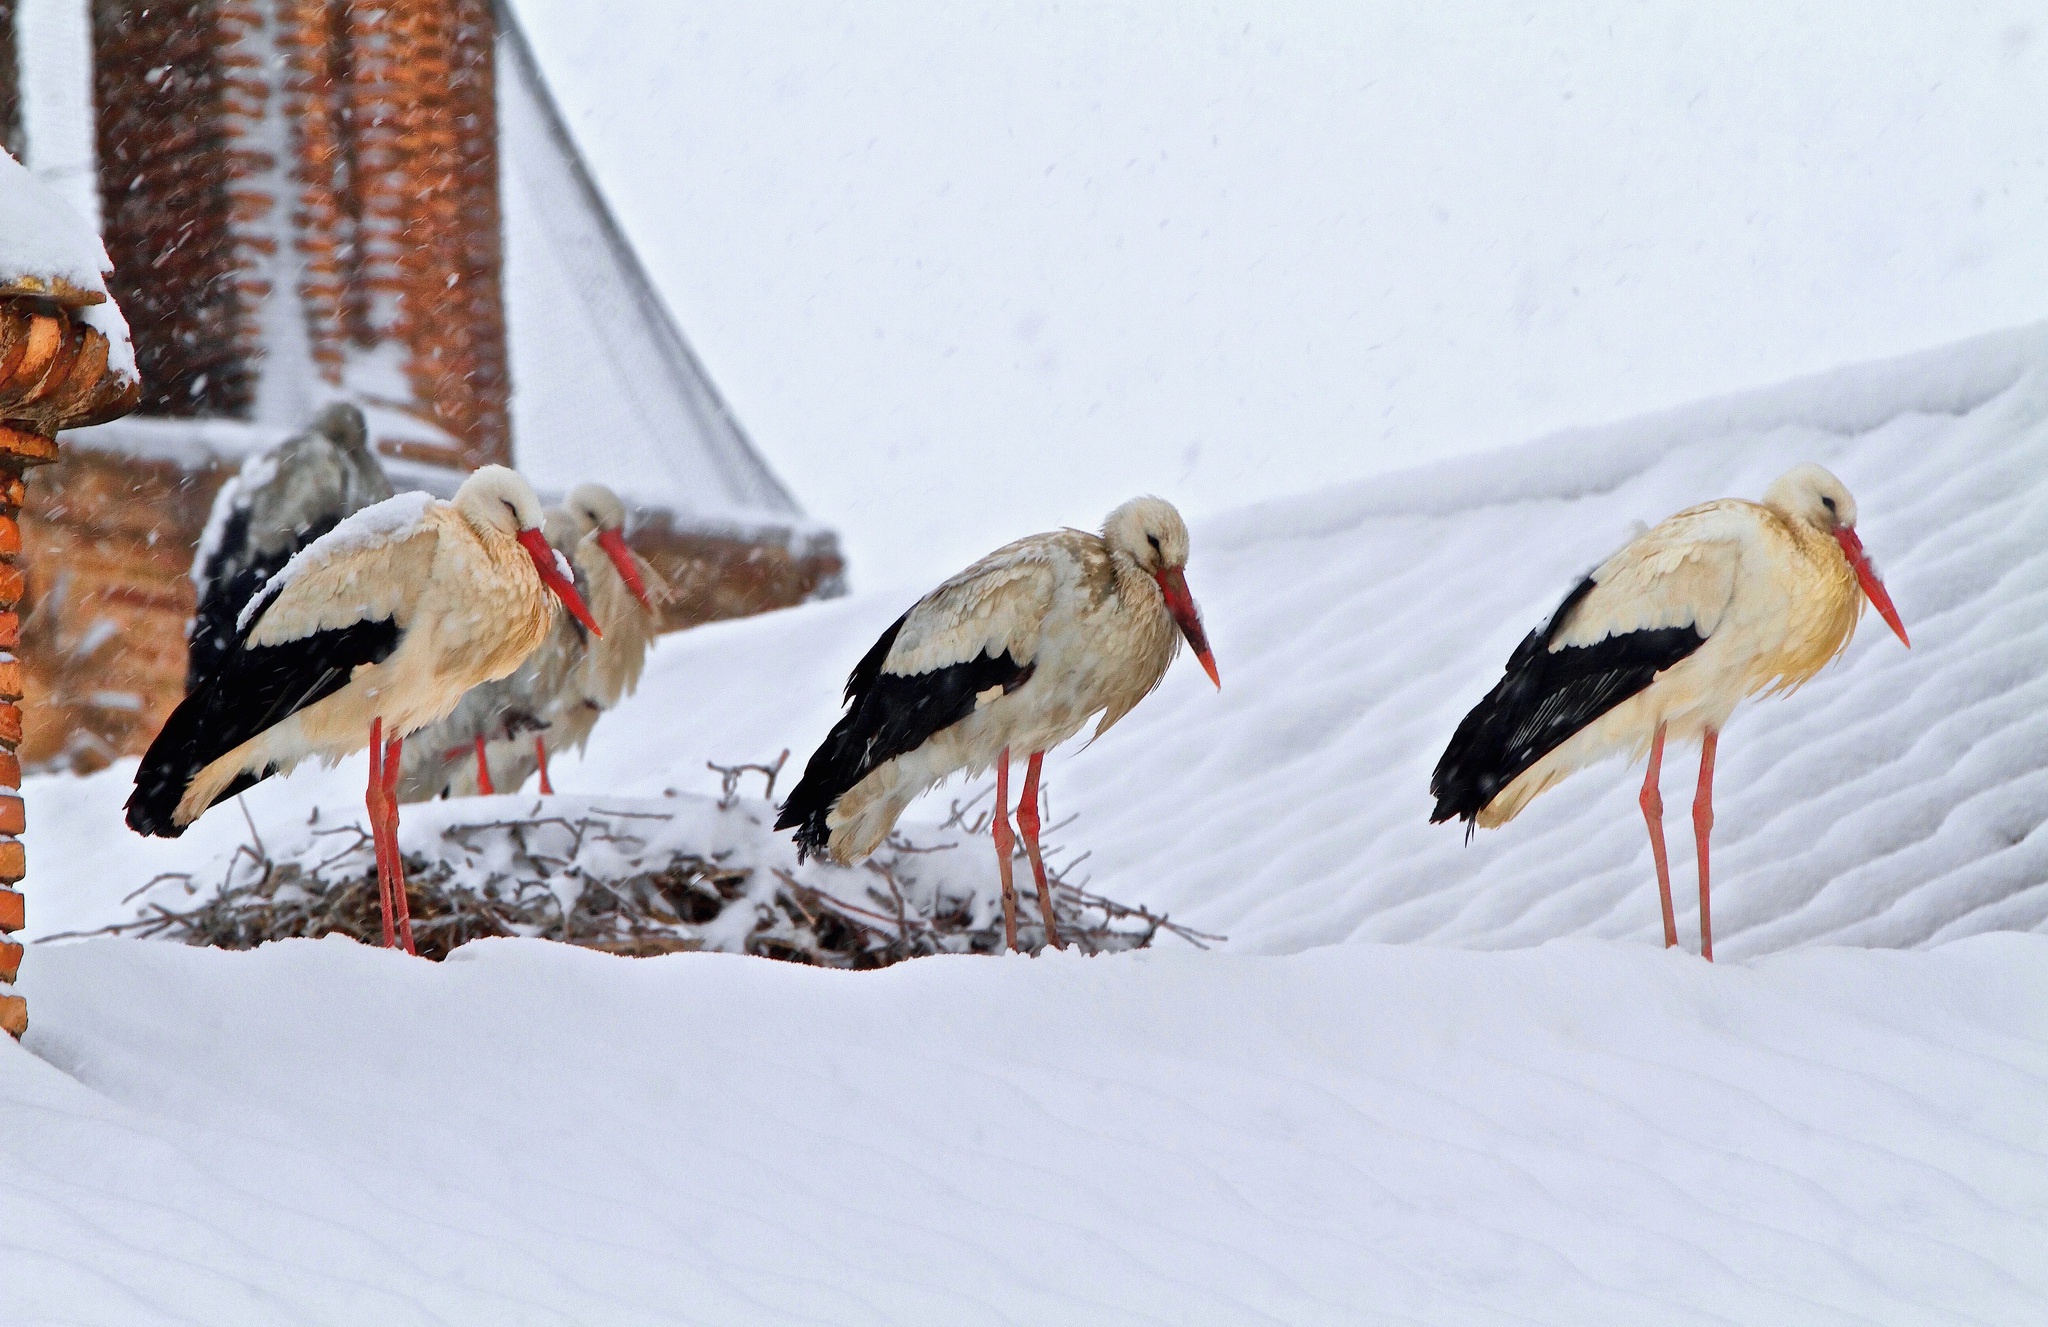 Скачать обои бесплатно Животные, Зима, Птицы, Снег, Белый Аист картинка на рабочий стол ПК